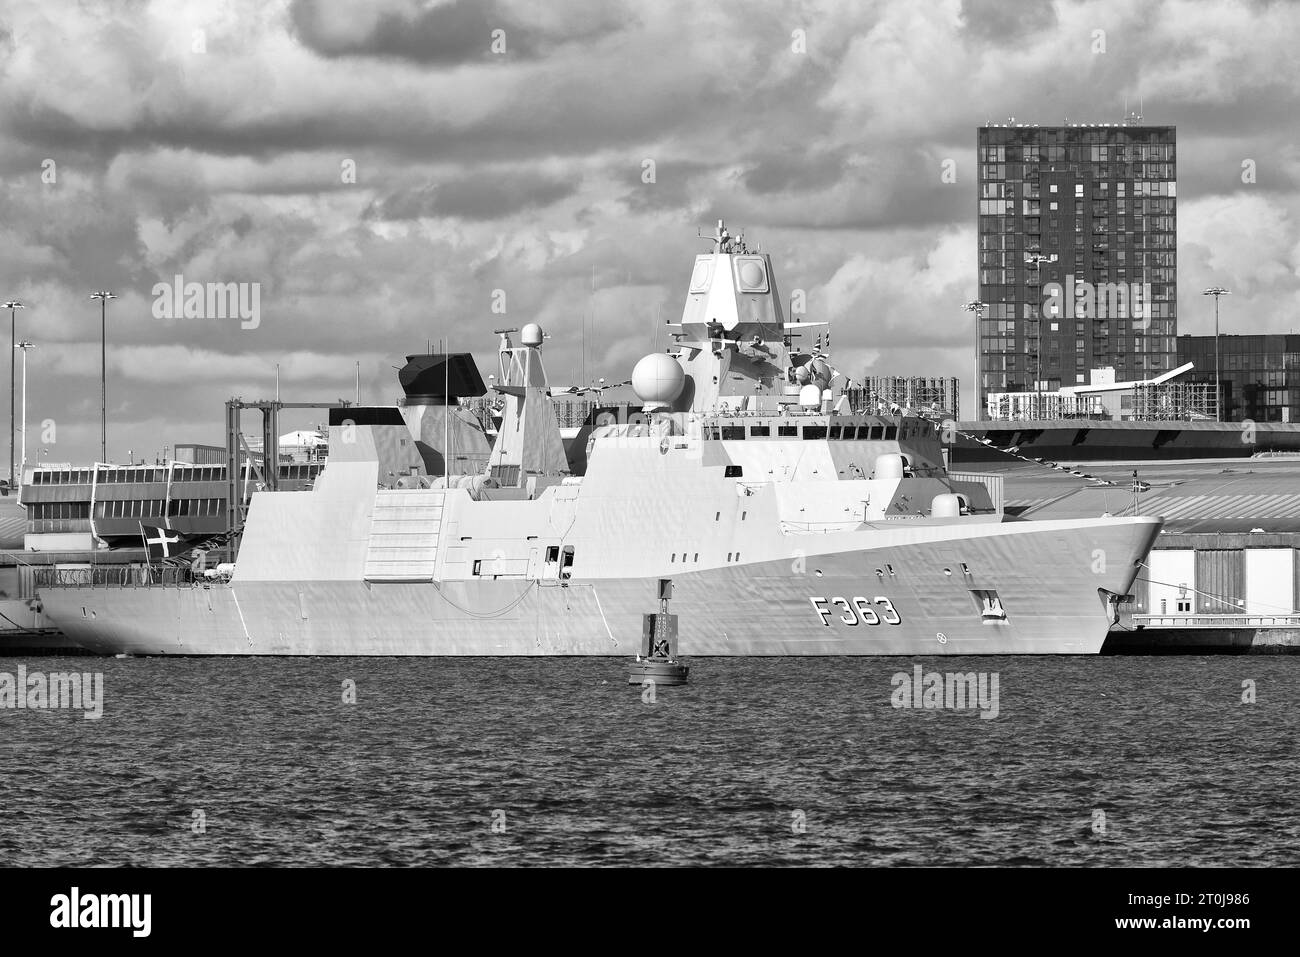 Photo en noir et blanc de la frégate de défense aérienne royale danoise HDMS Niels Juel (F363) amarrée à Southampton, au Royaume-Uni, avec d'autres navires de guerre de l'OTAN. Banque D'Images